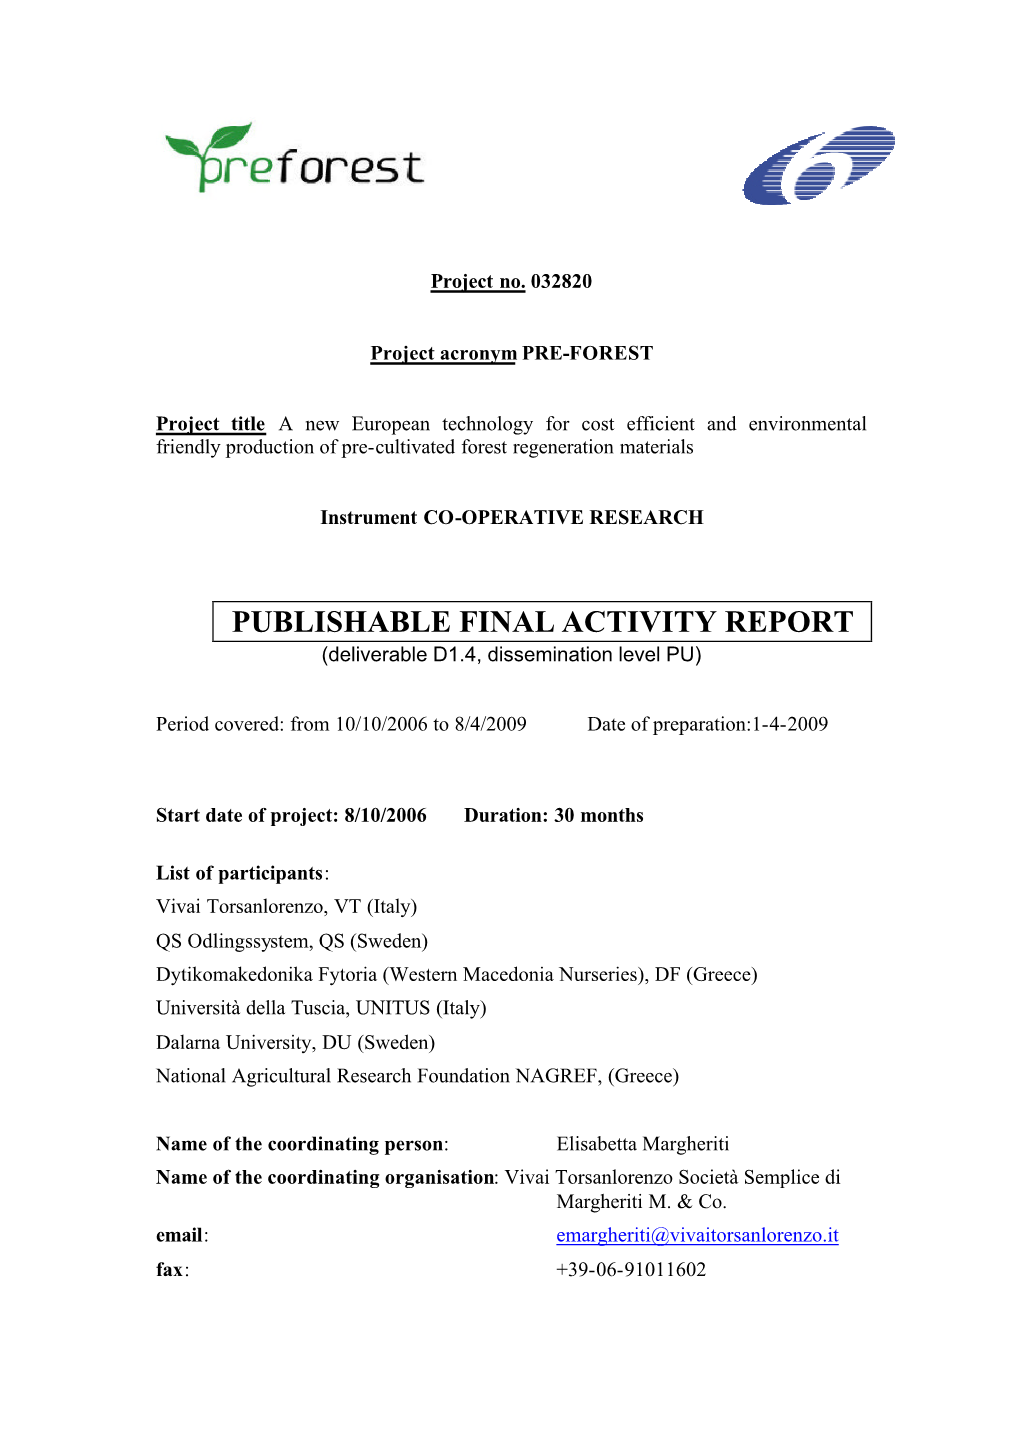 PUBLISHABLE FINAL ACTIVITY REPORT (Deliverable D1.4, Dissemination Level PU)